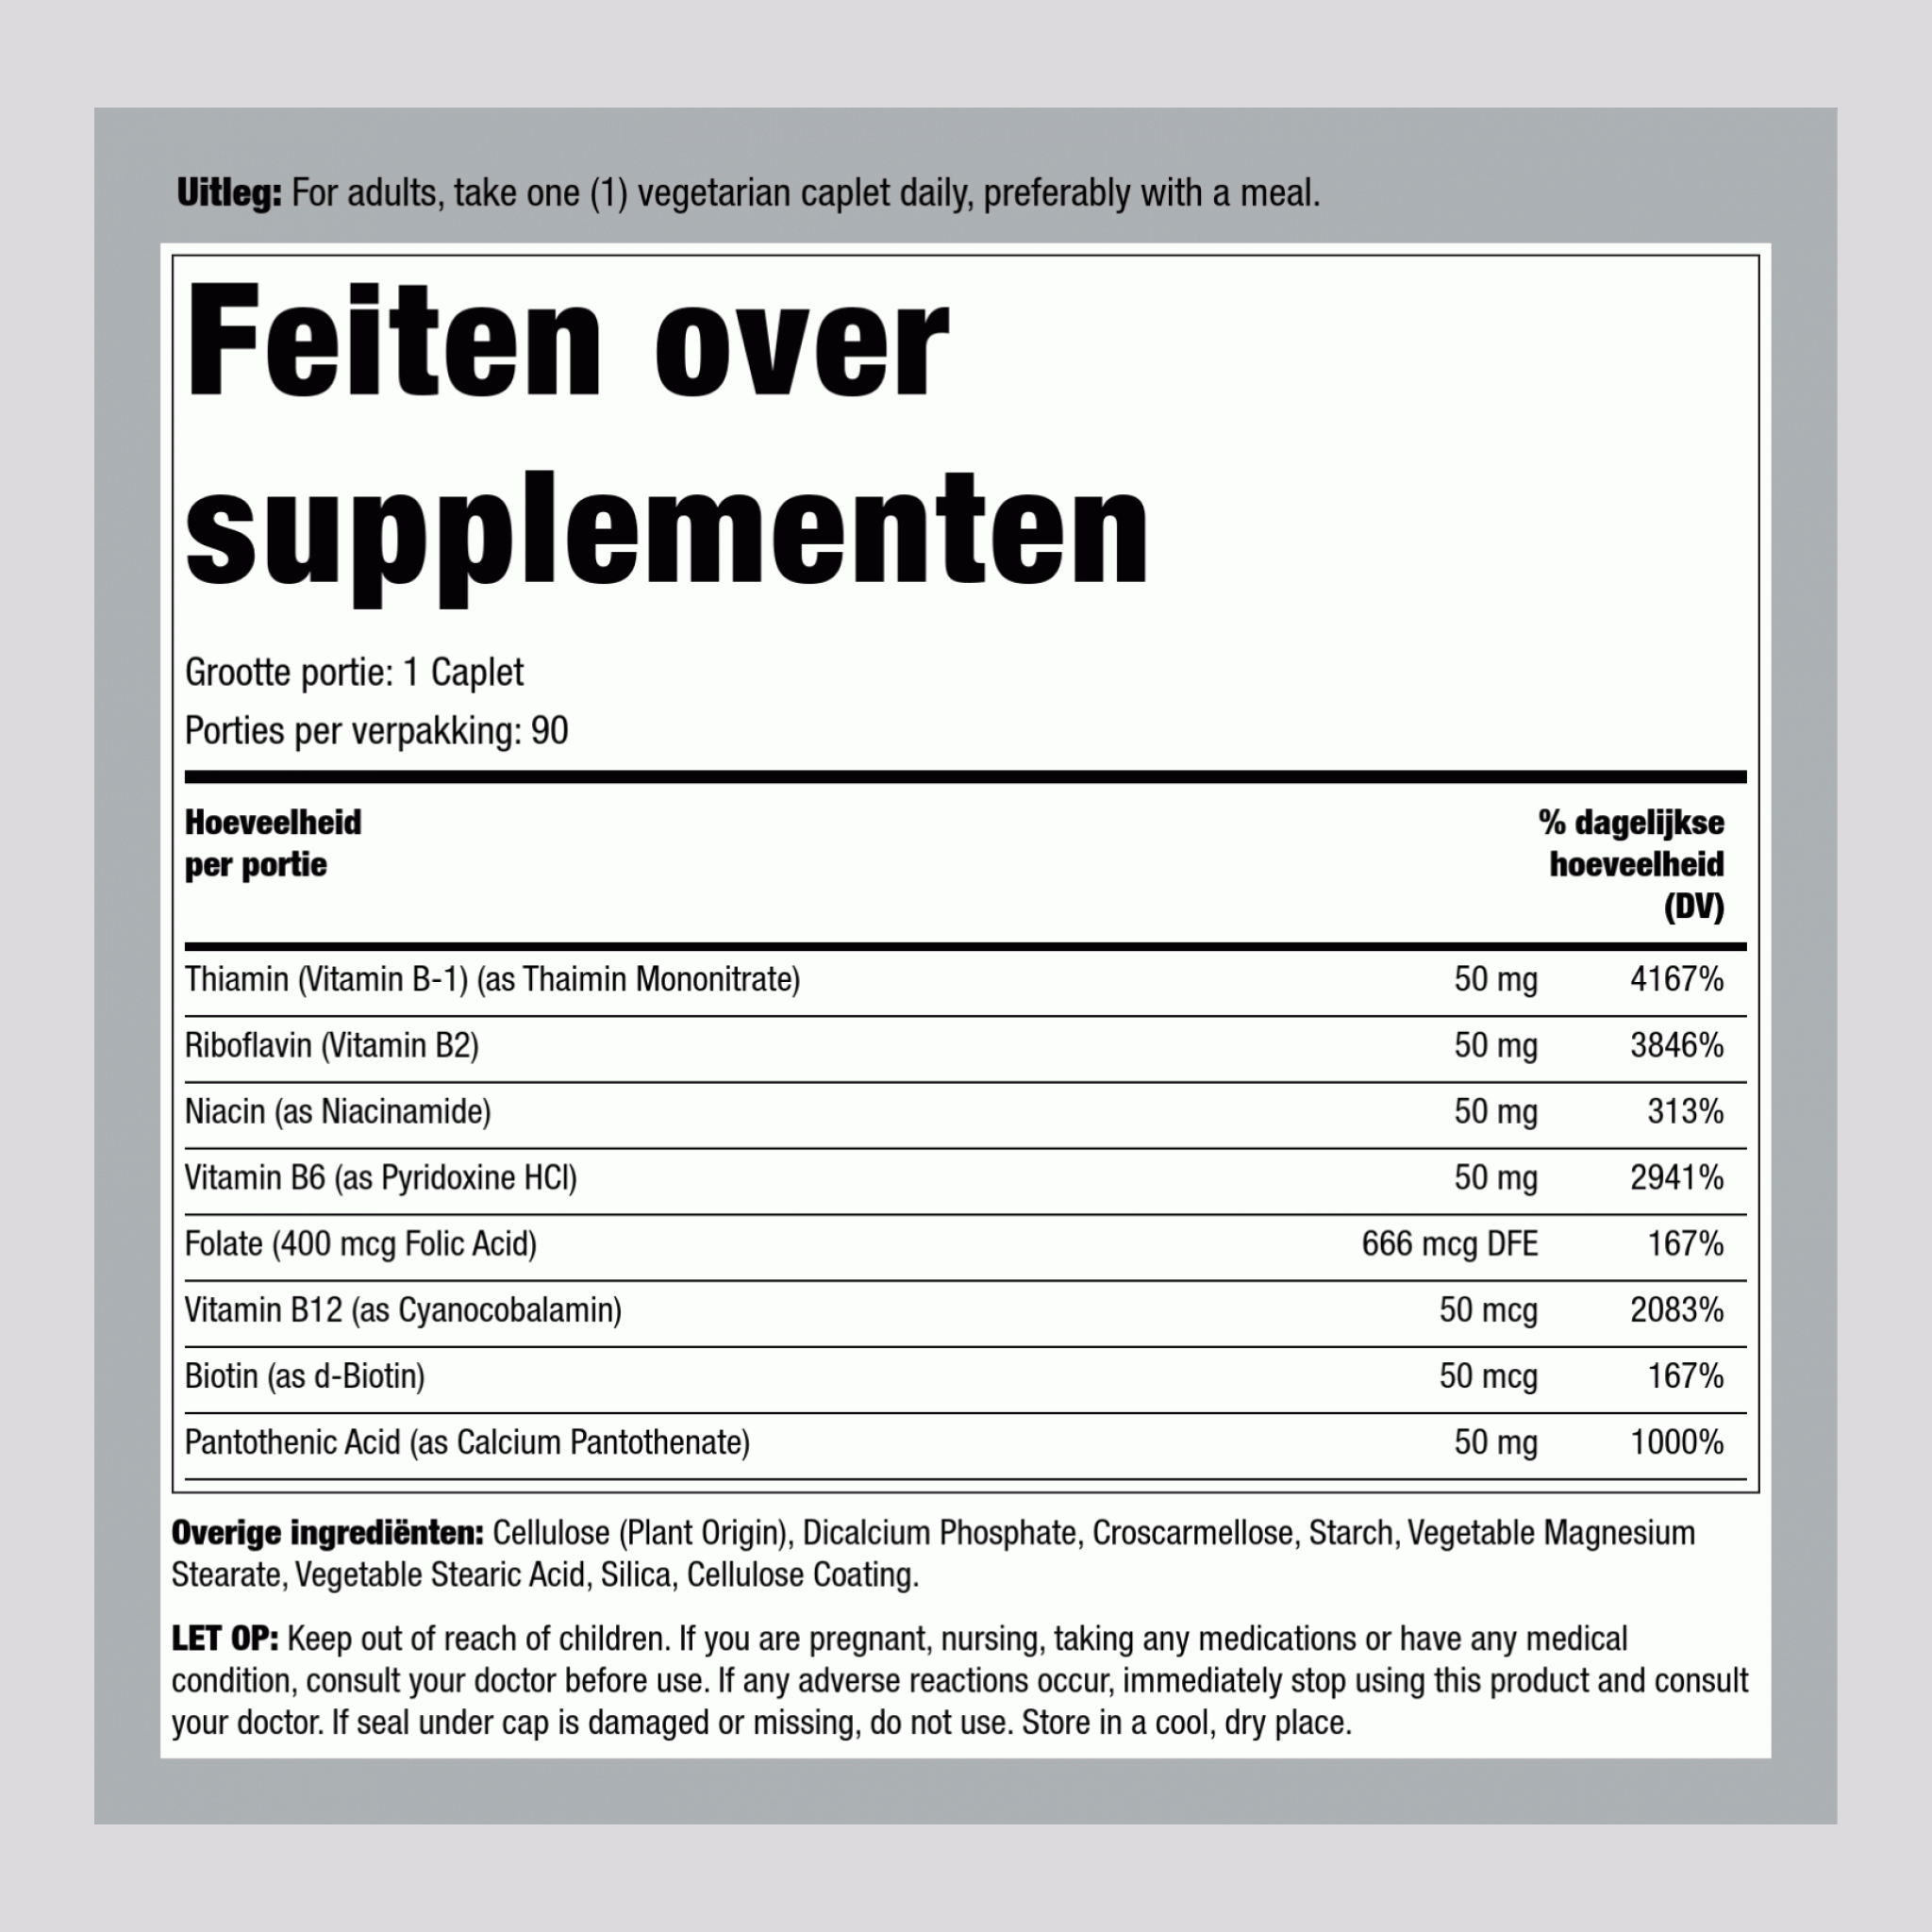 B-Complex, 50 mg, 90 Vegetarian Caplets, 2  Bottles